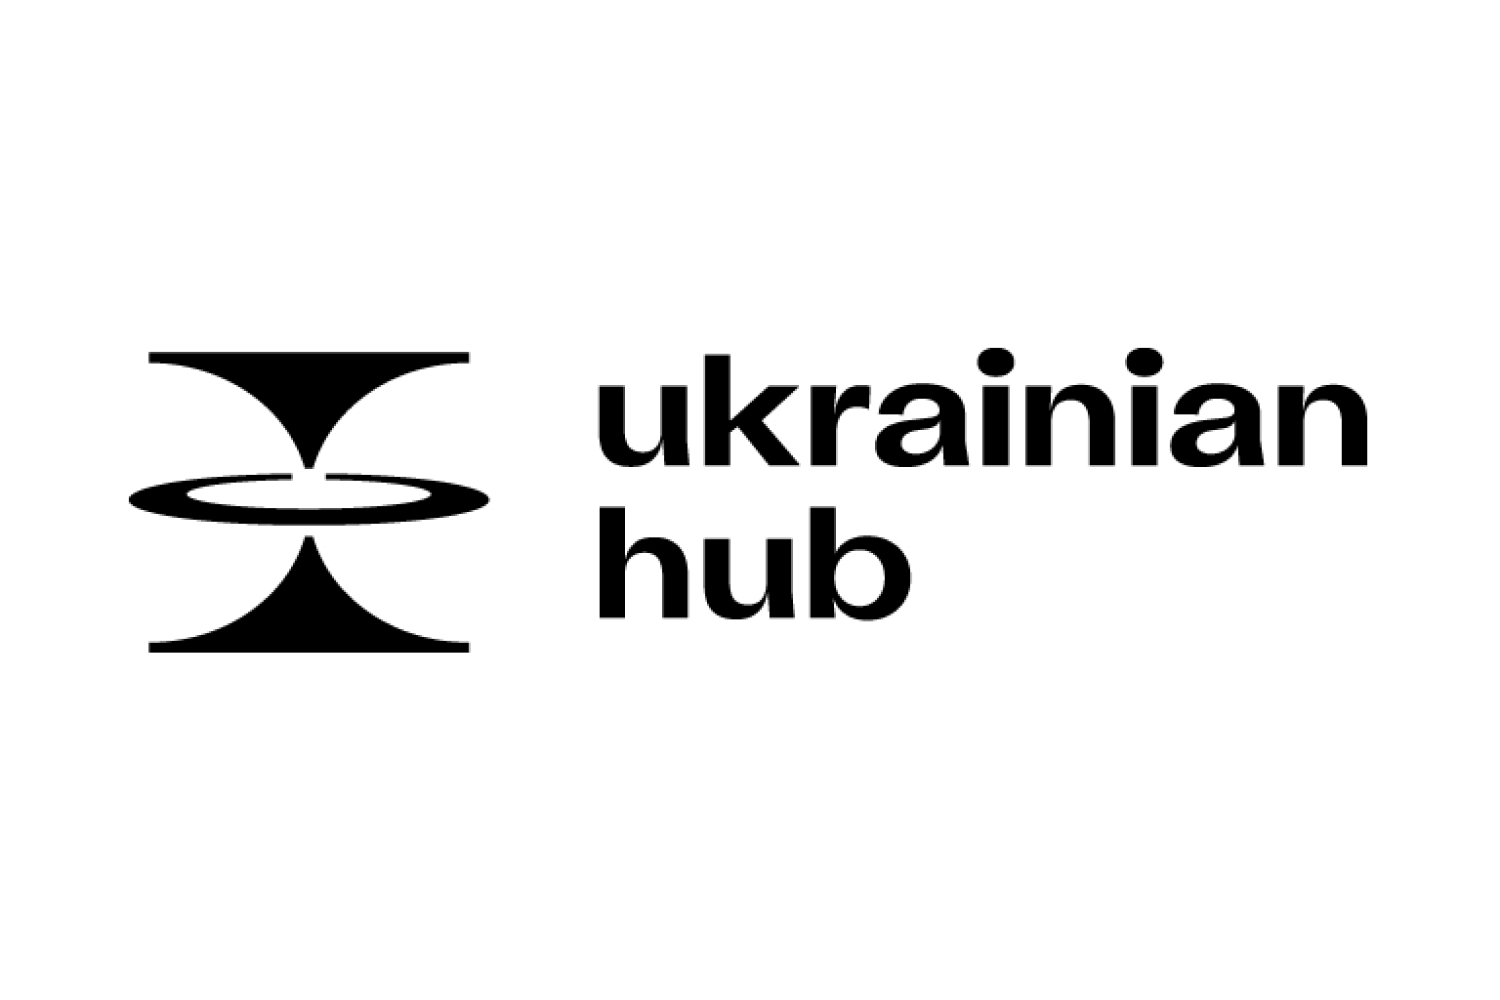 Ukrainian Hub logo